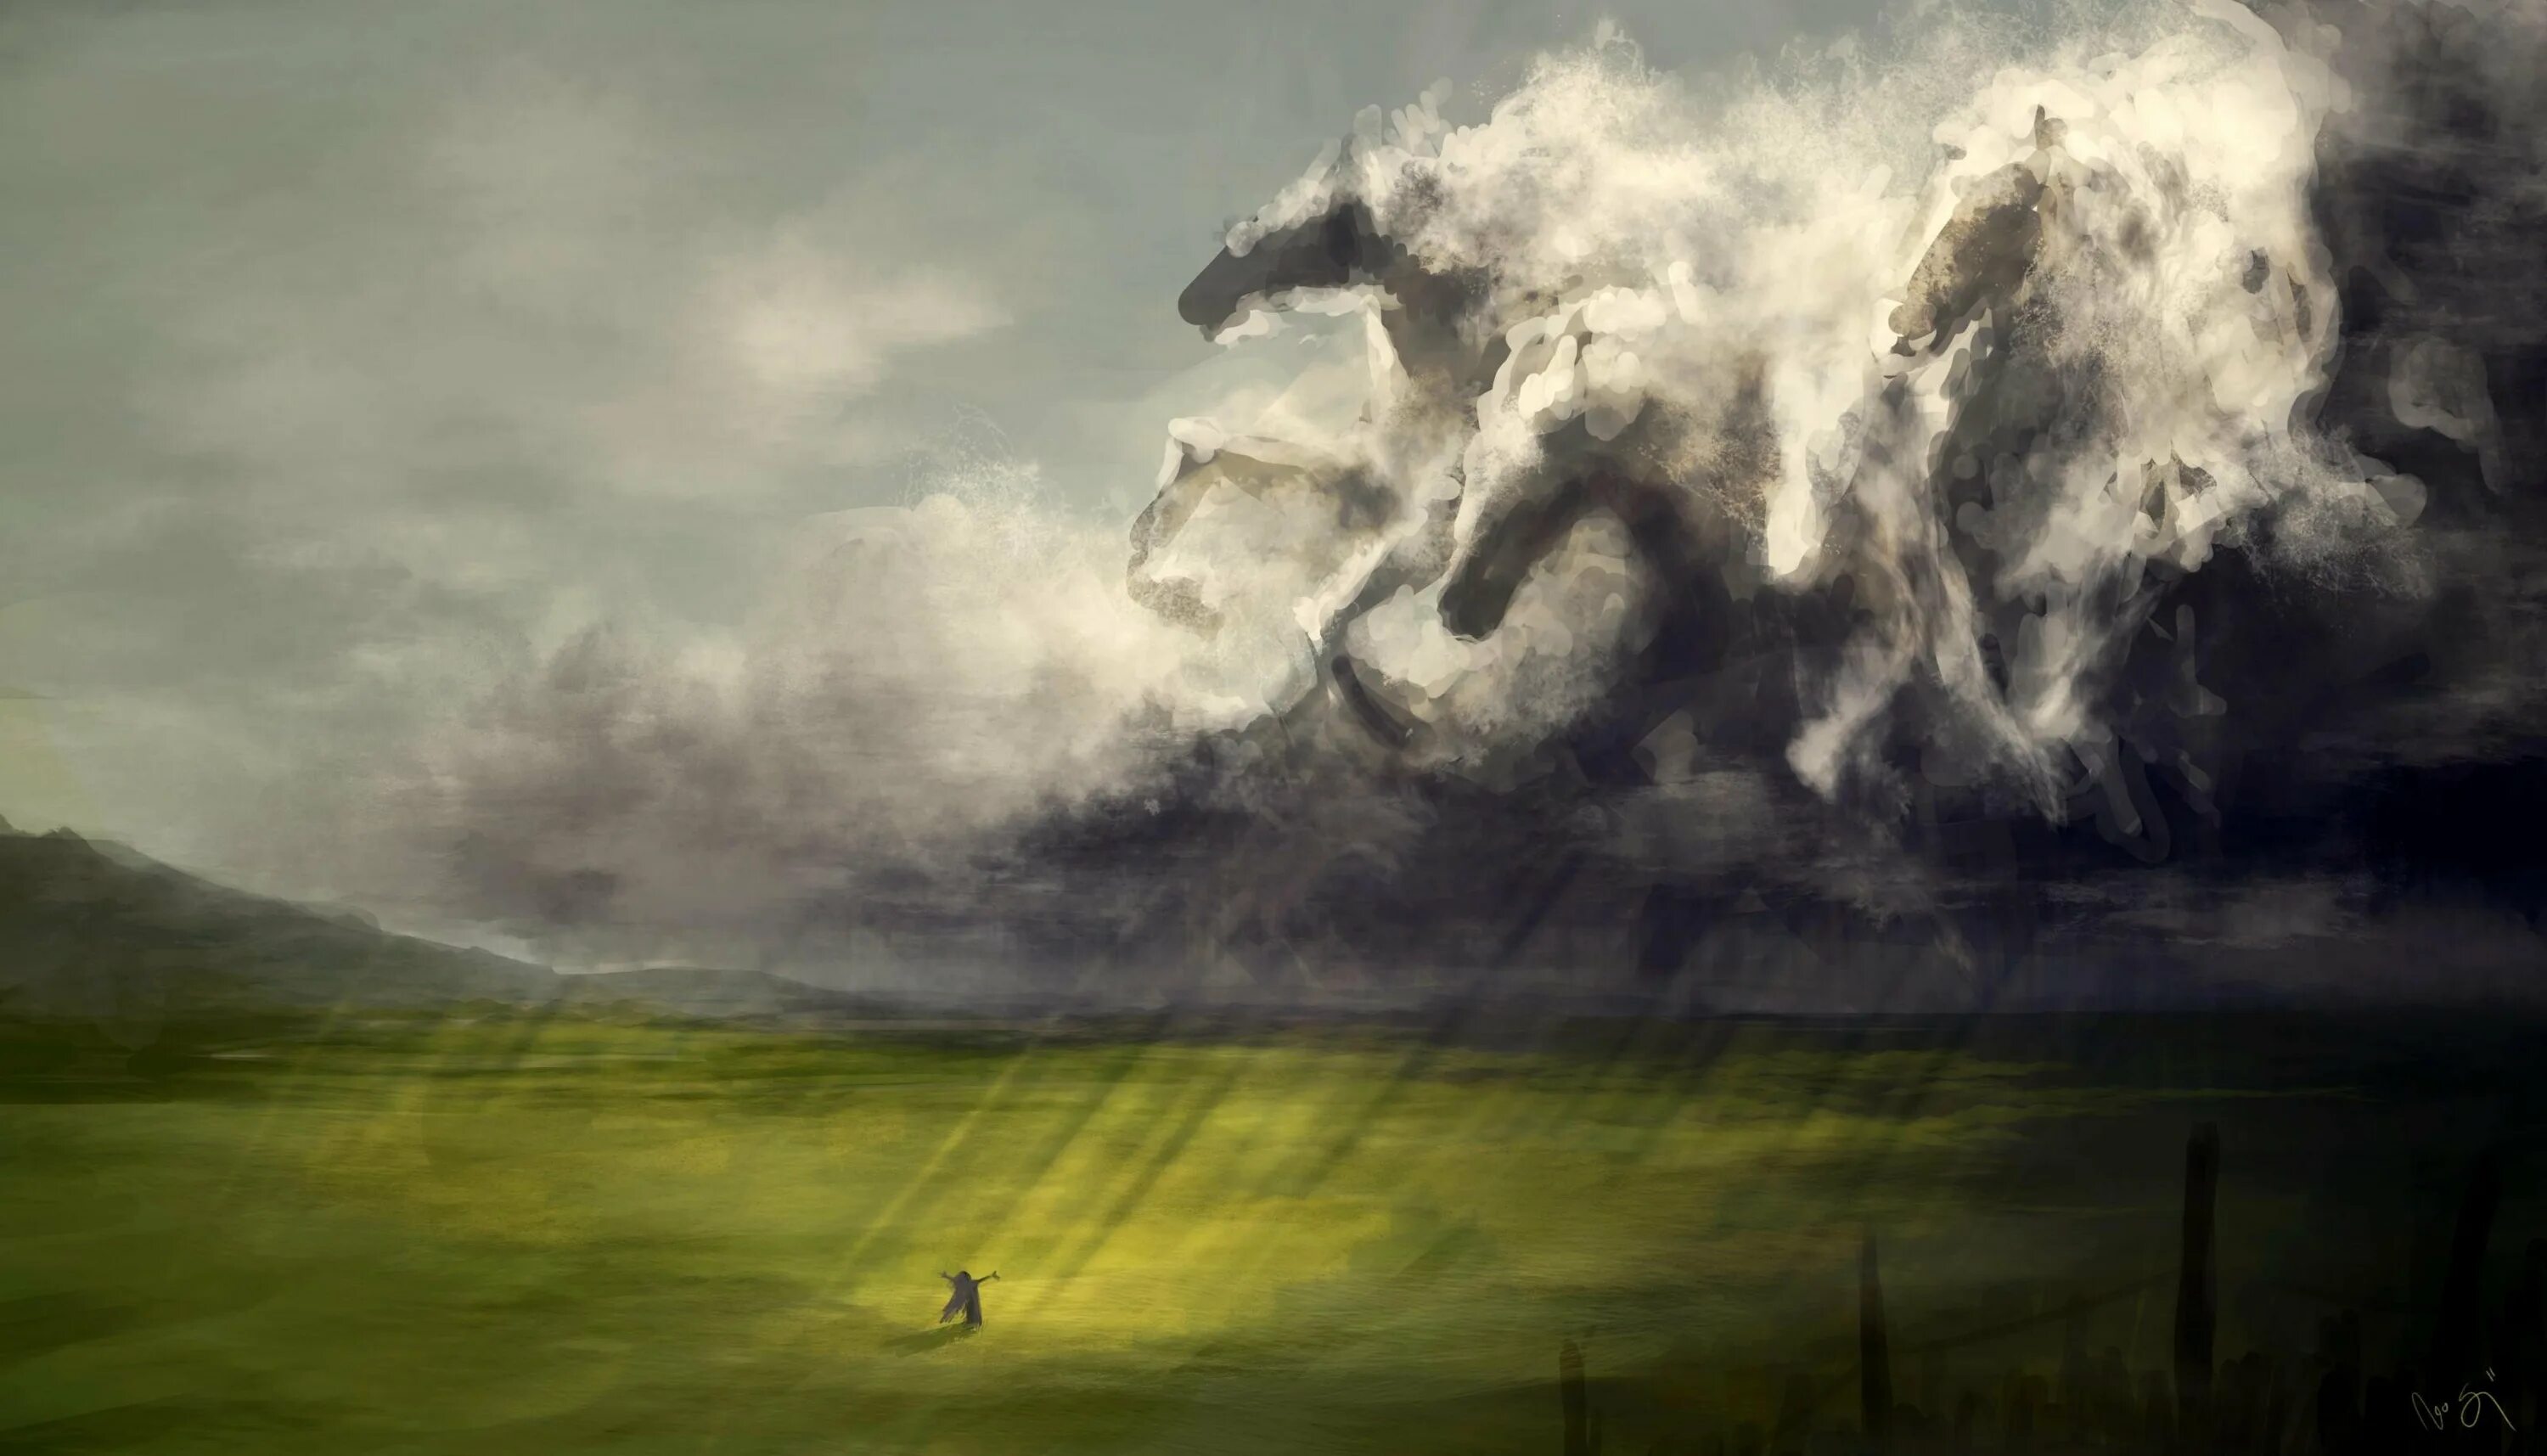 Дика тучи. Грозовые тучи. Лошадь в тумане. Пейзаж буря. Гроза и ветер.